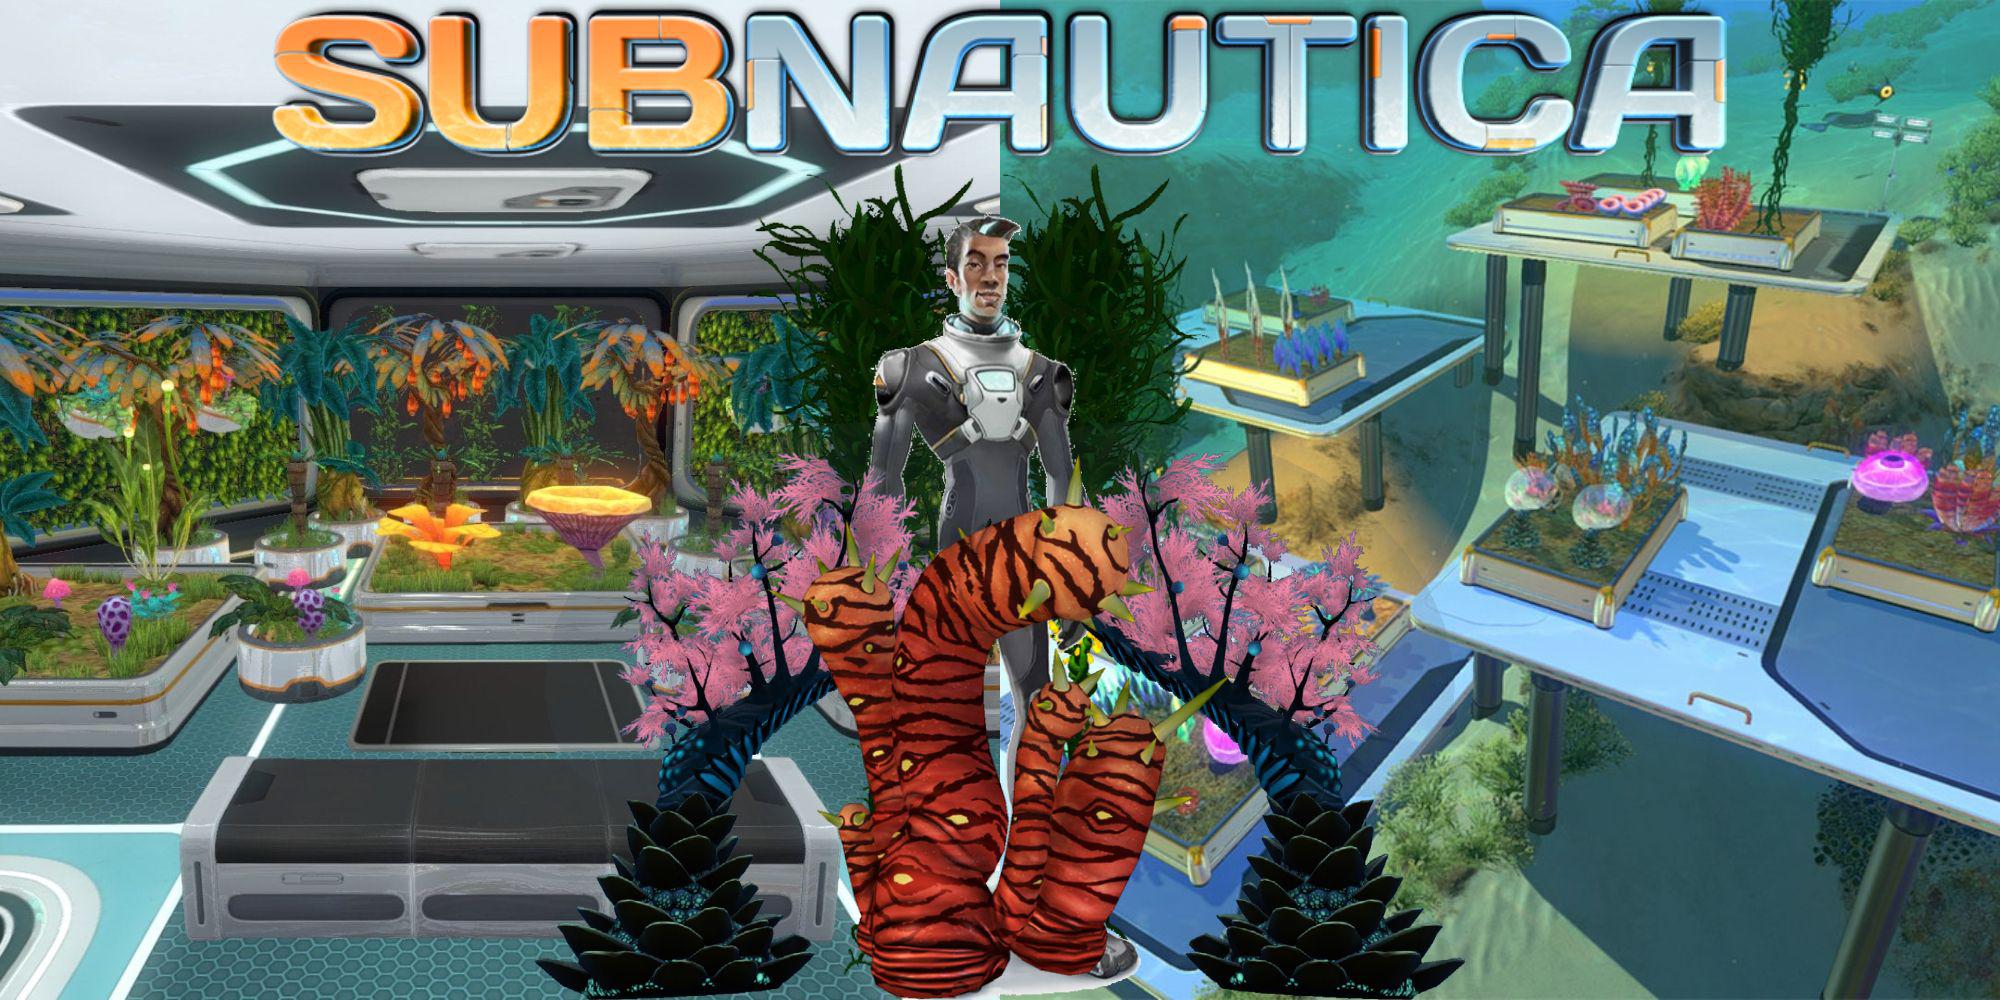 Subnautica recebe a primeira grande atualização em 2 anos, com mais de 800 correções de bugs